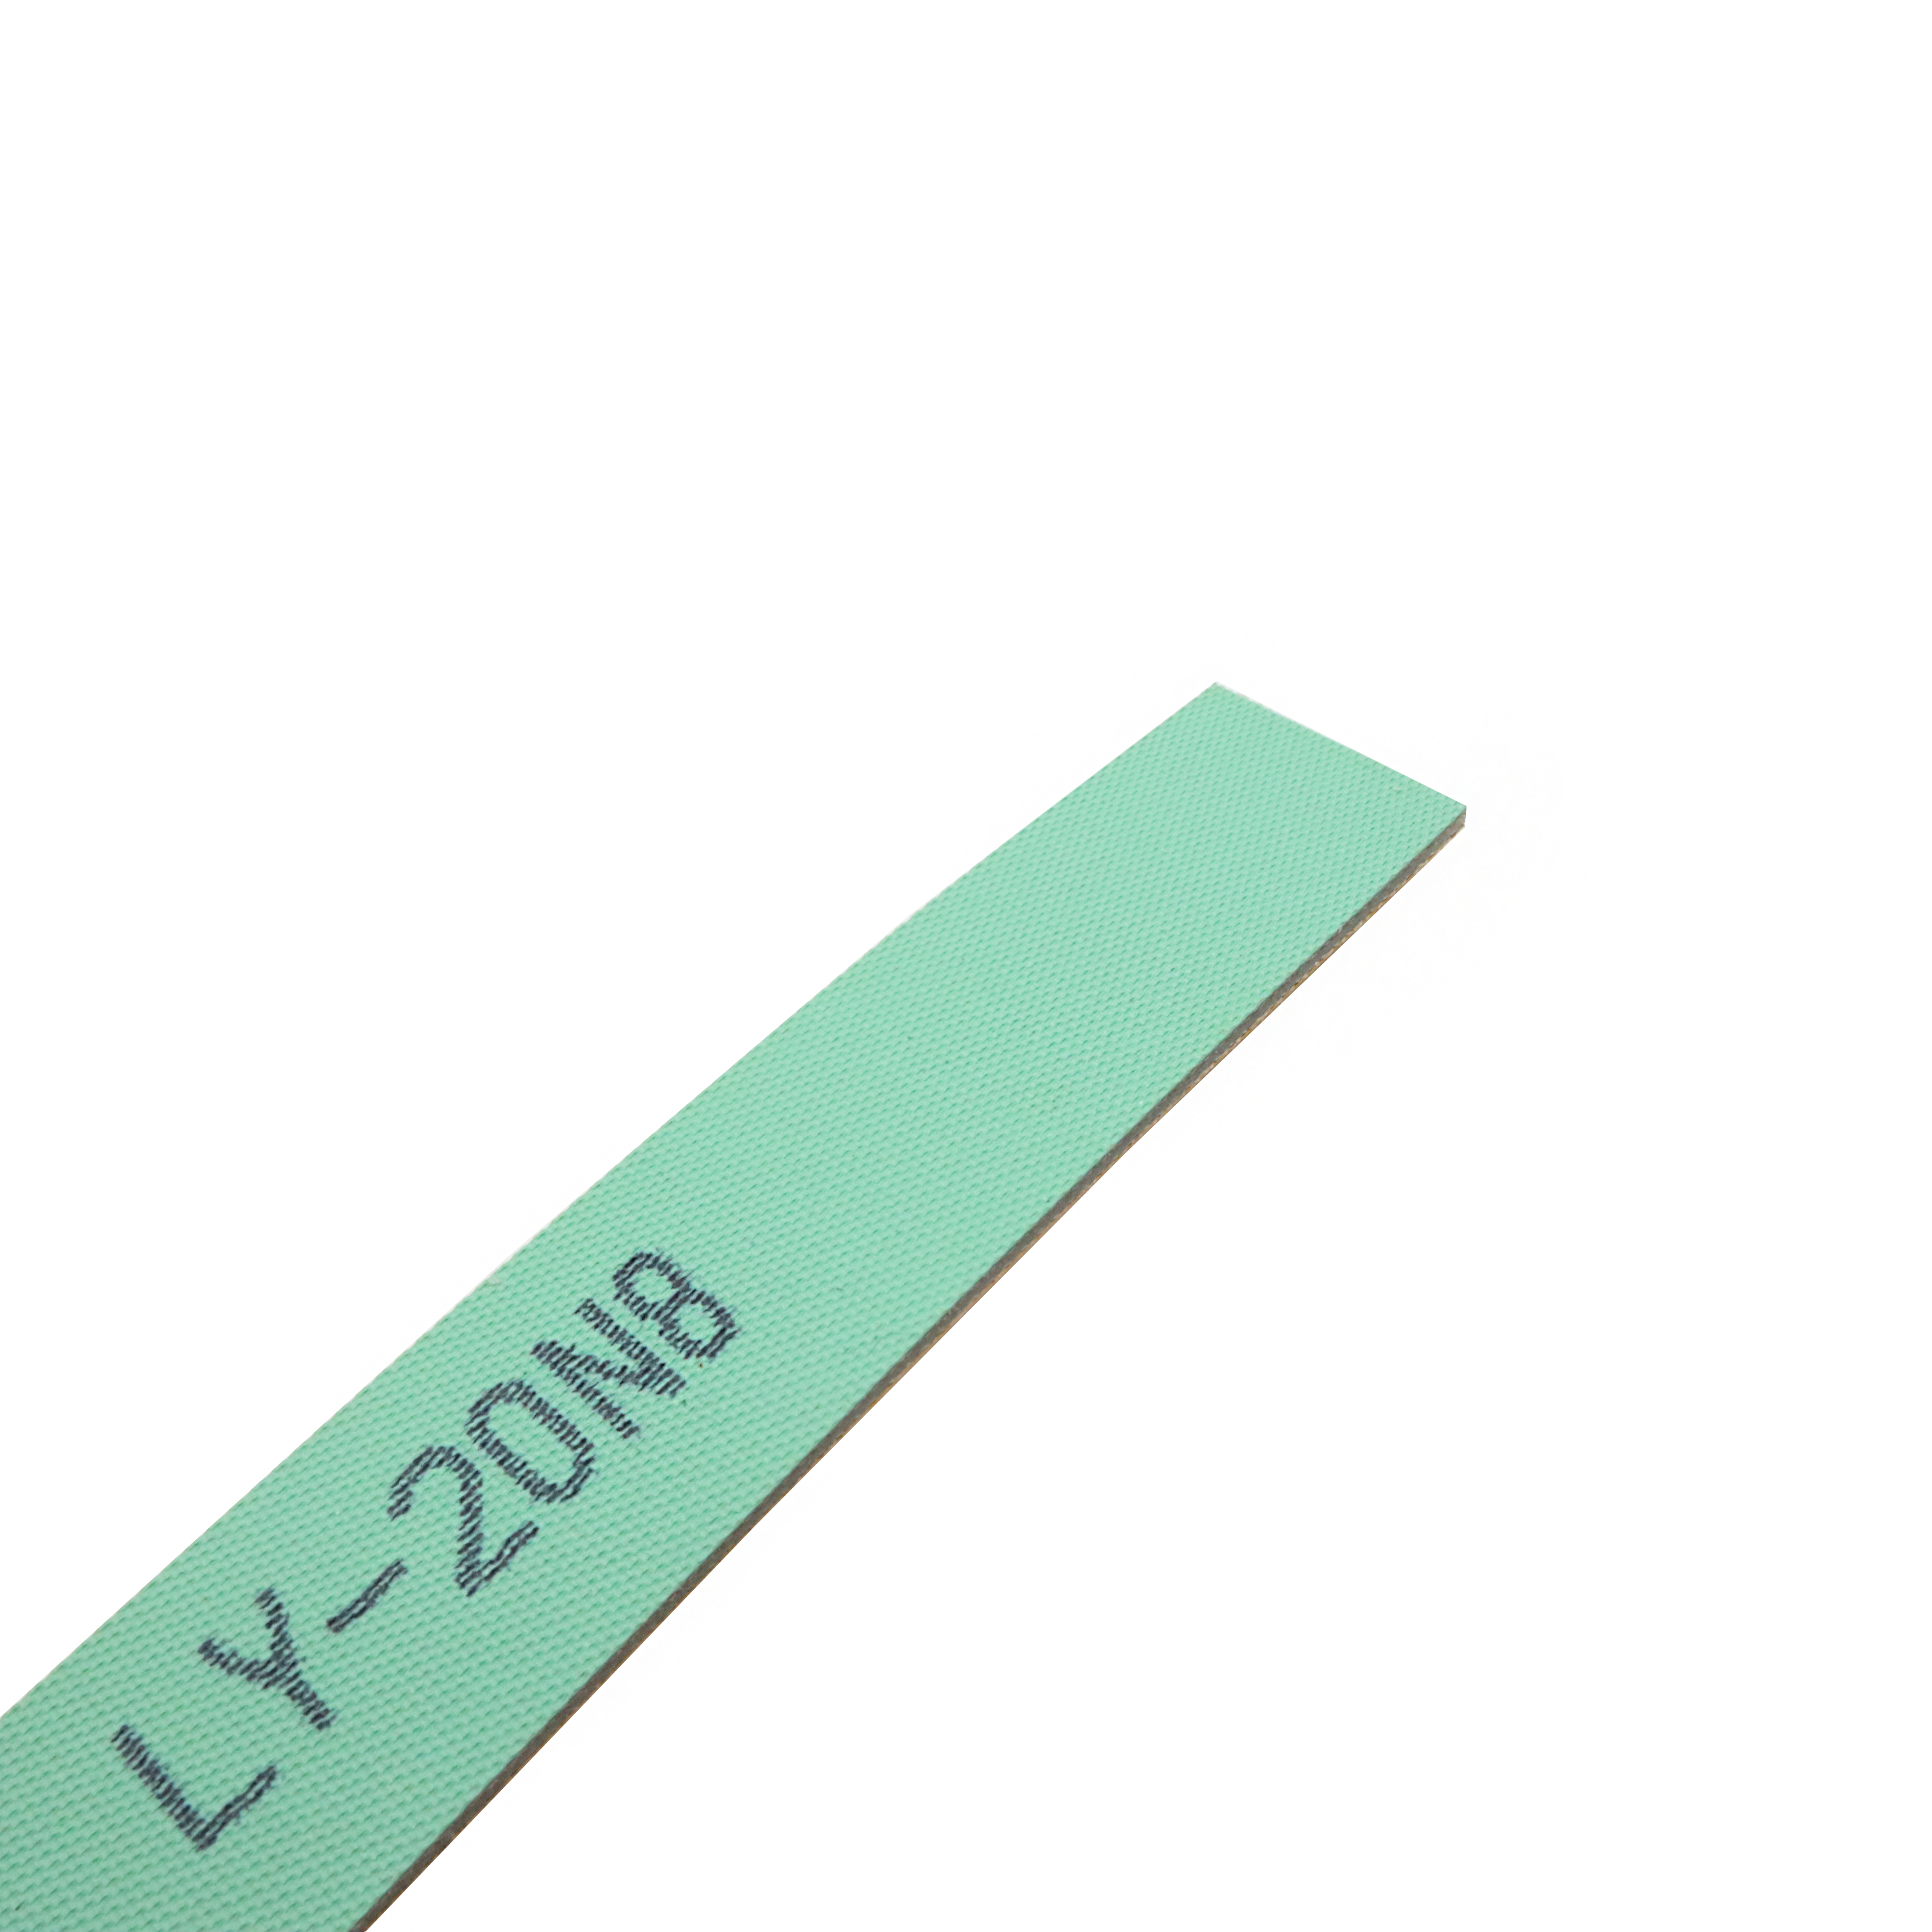 LY-20N8